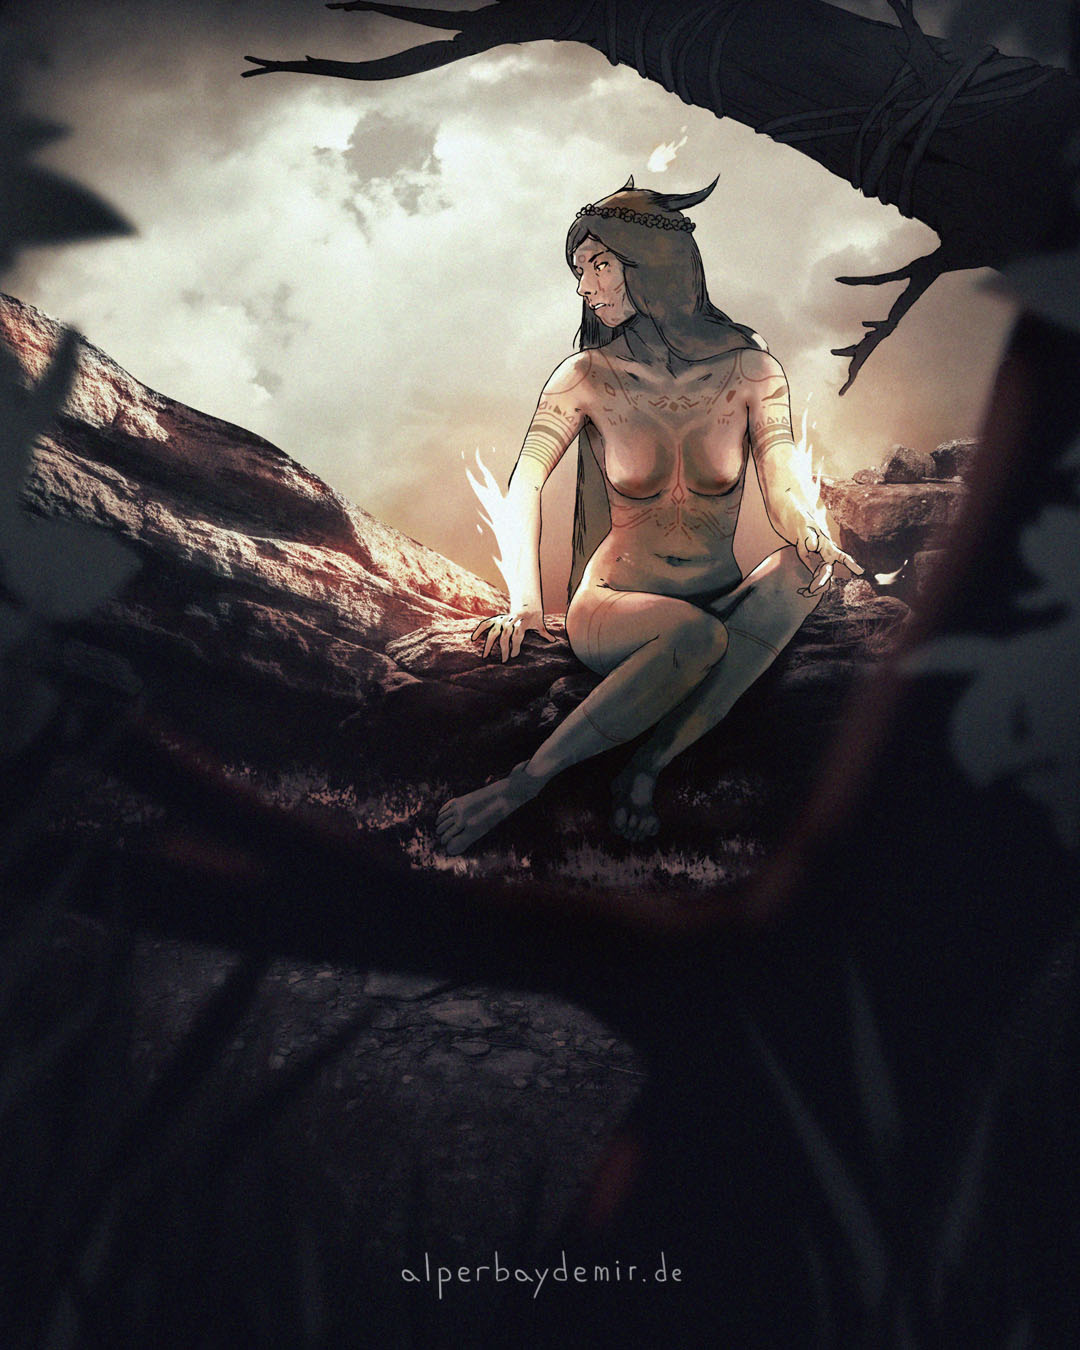 Illustration einer sitzenden Hexe, blickt gedankenverloren, dunkler Himmel im Hintergrund, scheint beobachtet zu werden